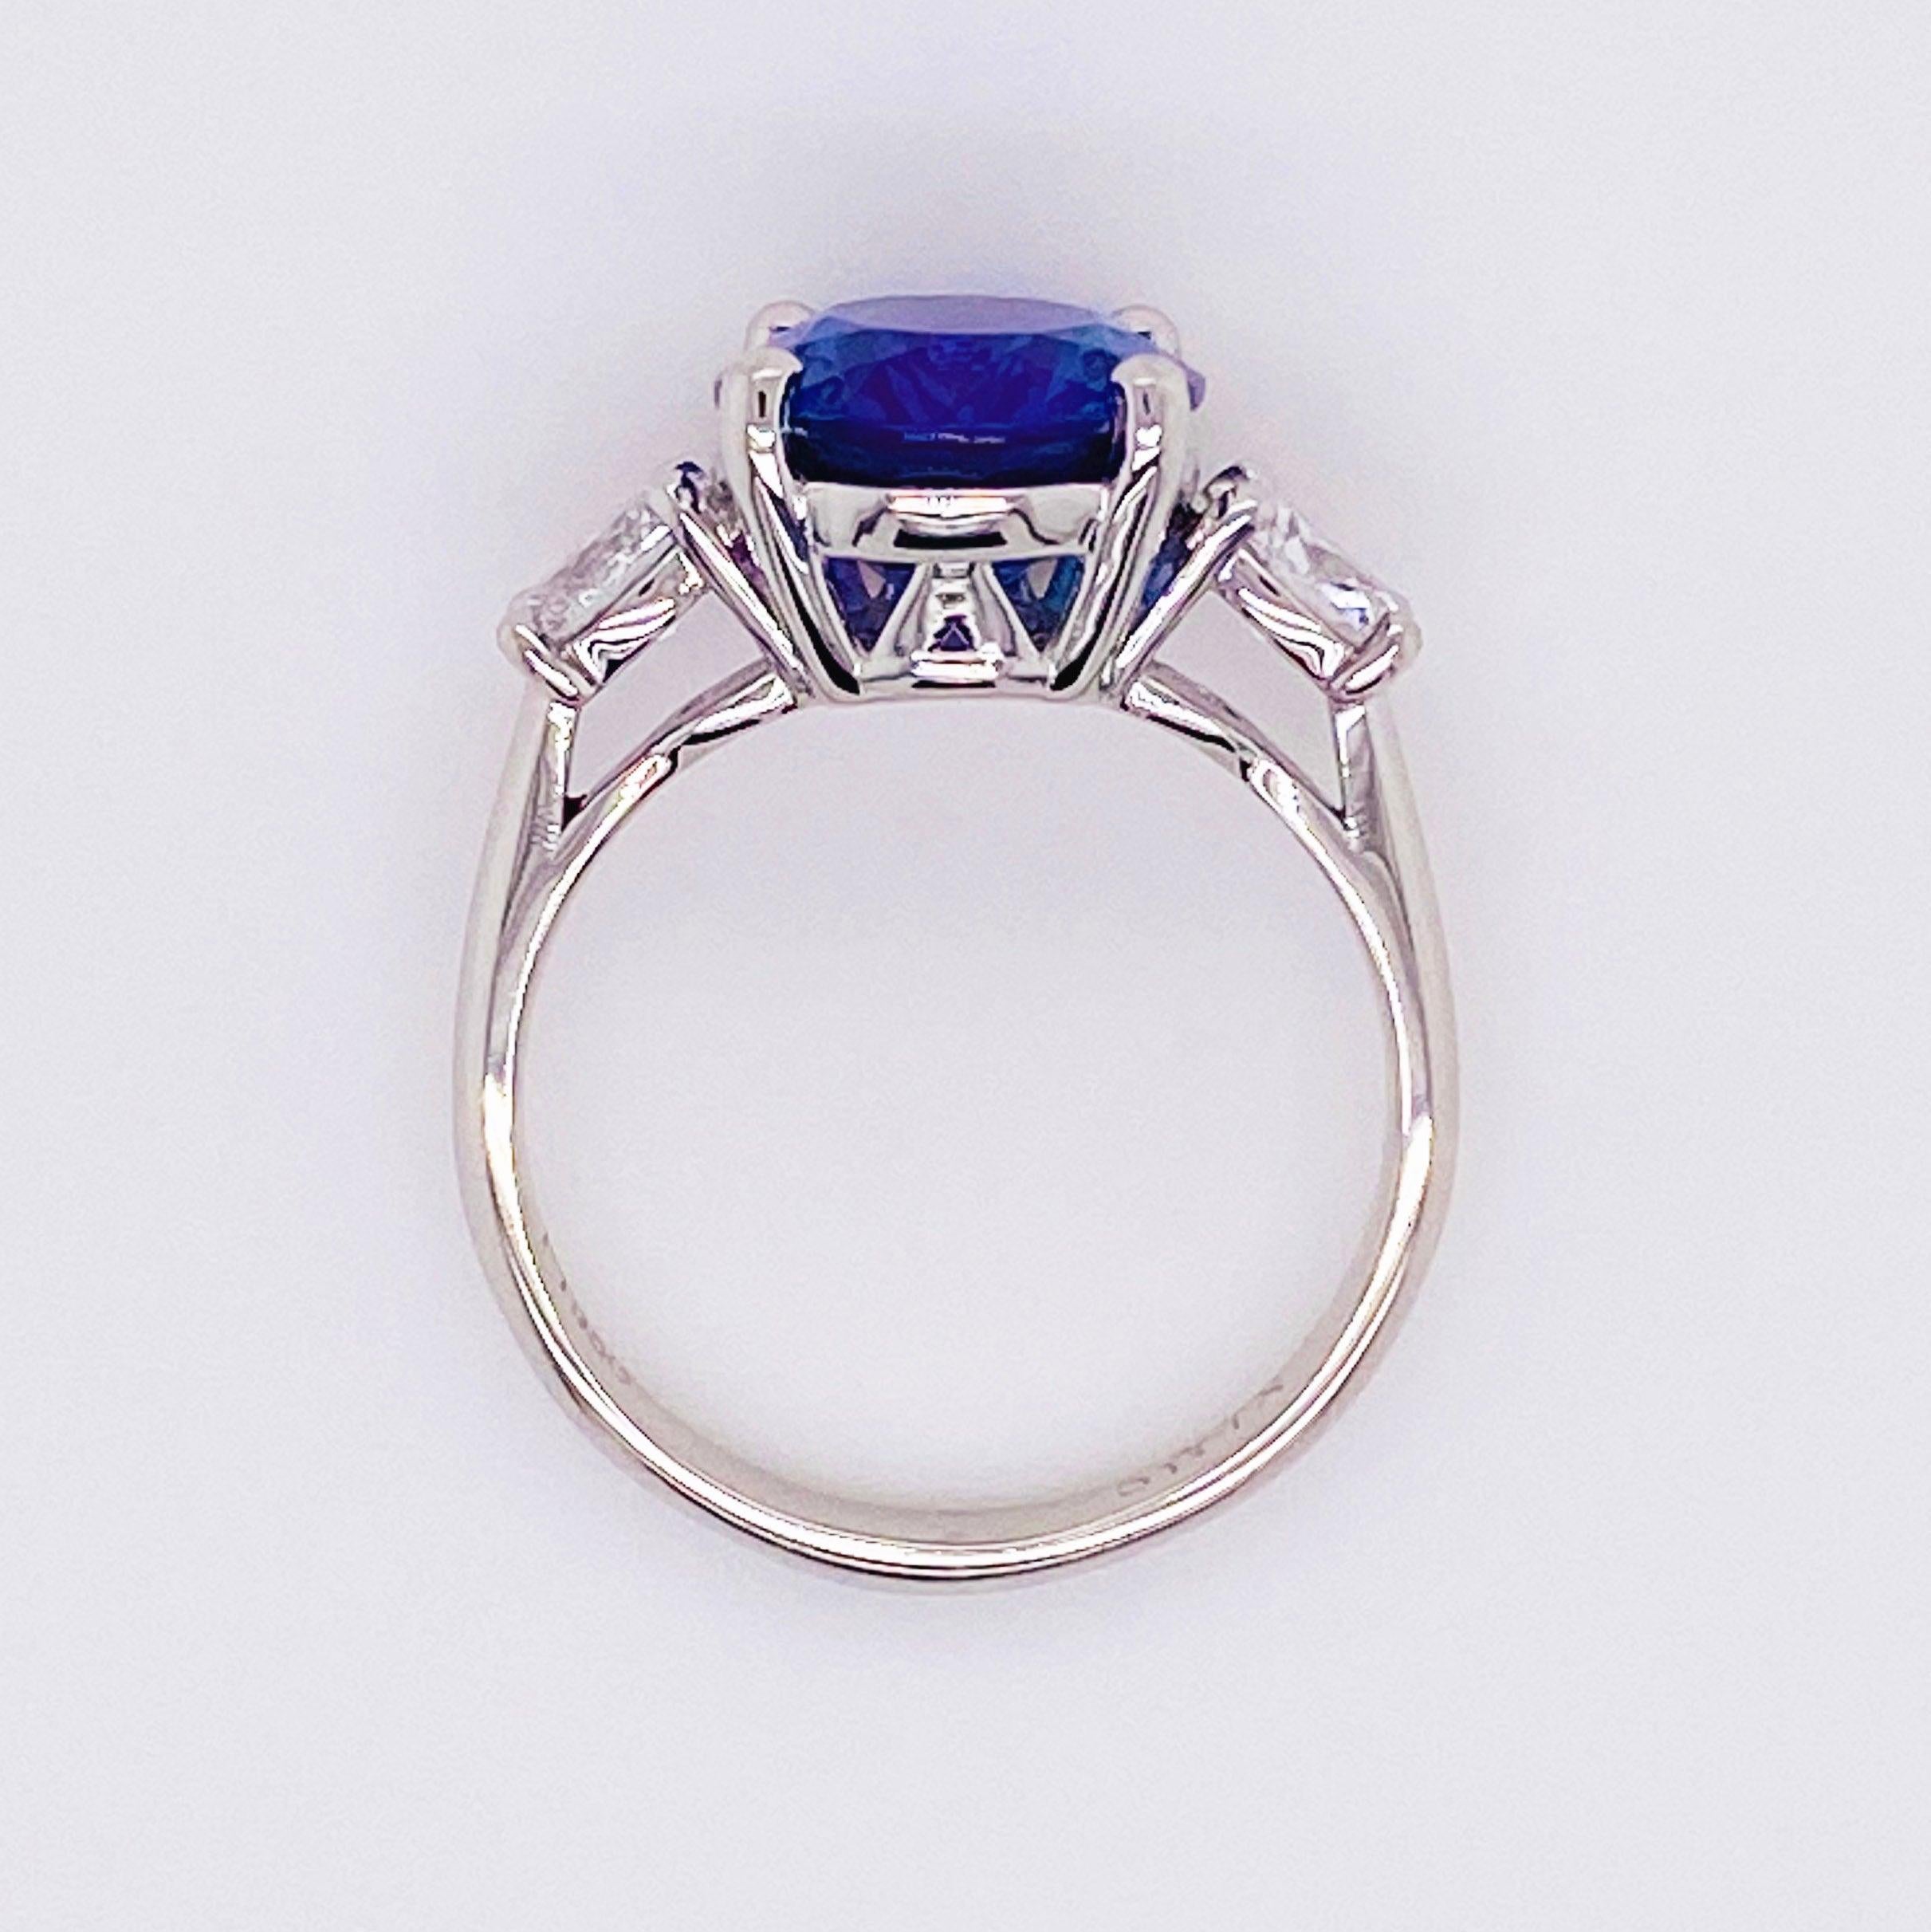 For Sale:  Tanzanite Diamond Ring, 4.77 Carat Tanz, 14 Karat Gold Three-Stone Ring 3